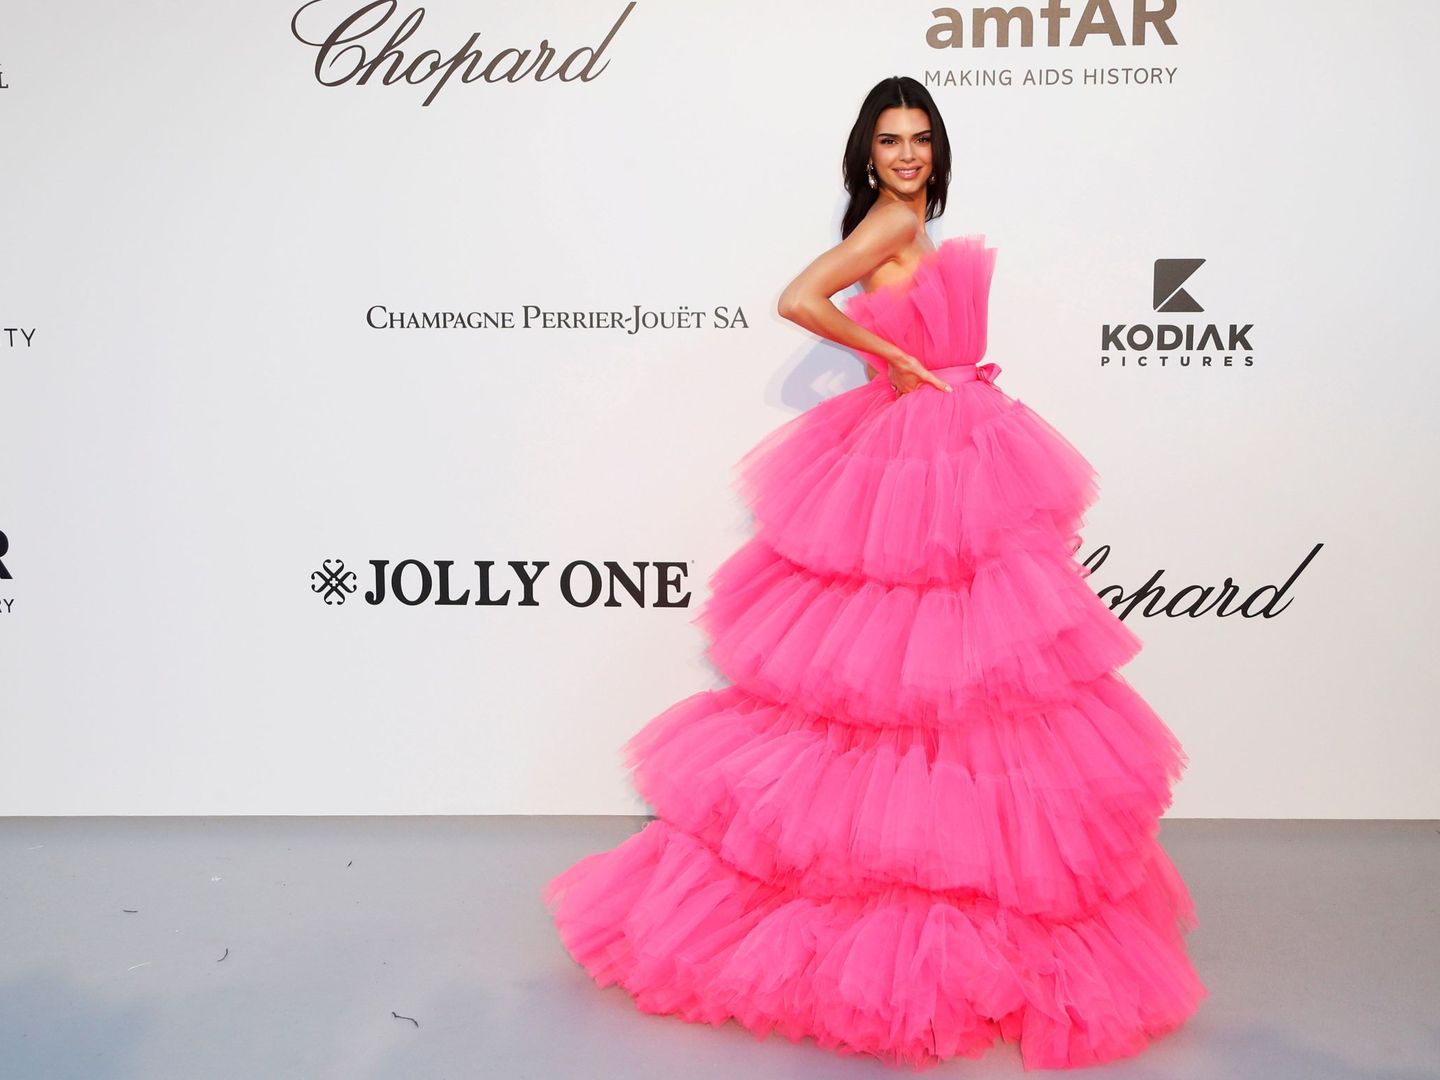 La modelo Kendall Jenner posa a su llegada a la gala amfAR con el vestido en cuestión.